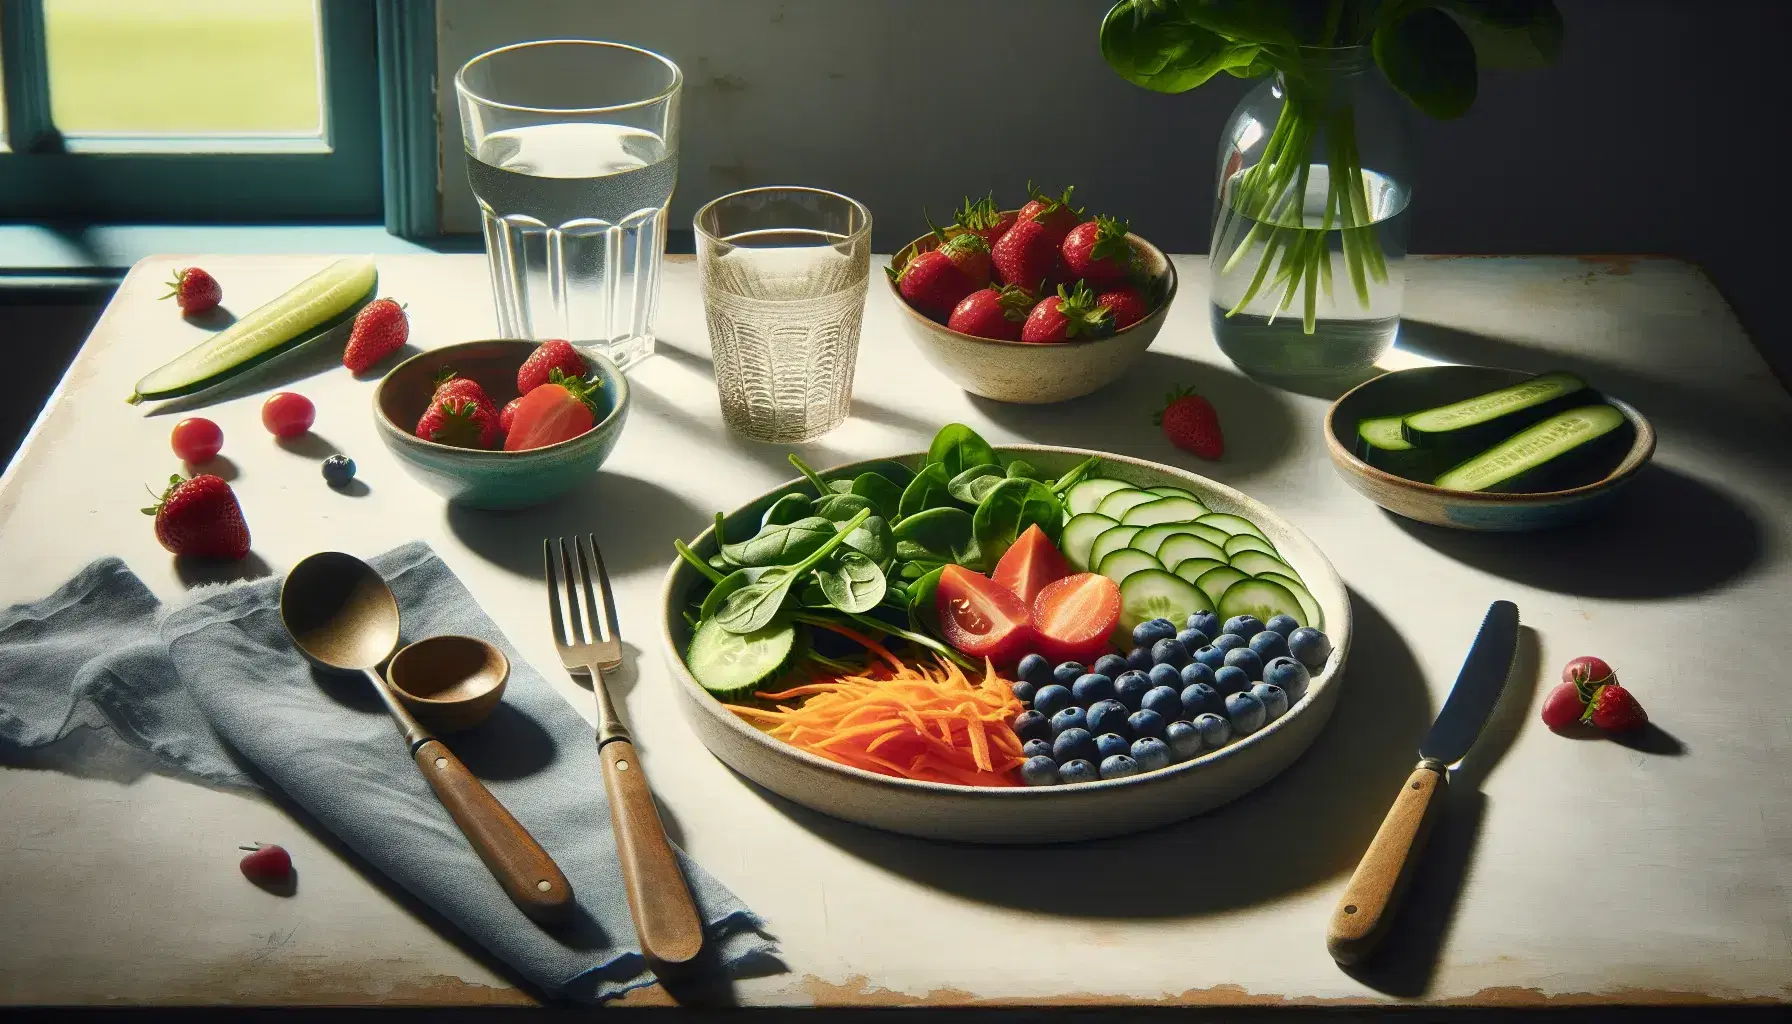 Mesa de madera clara con ensalada fresca en plato blanco, cuenco de frutos rojos, botella y vaso de agua, cubiertos y plantas al fondo.